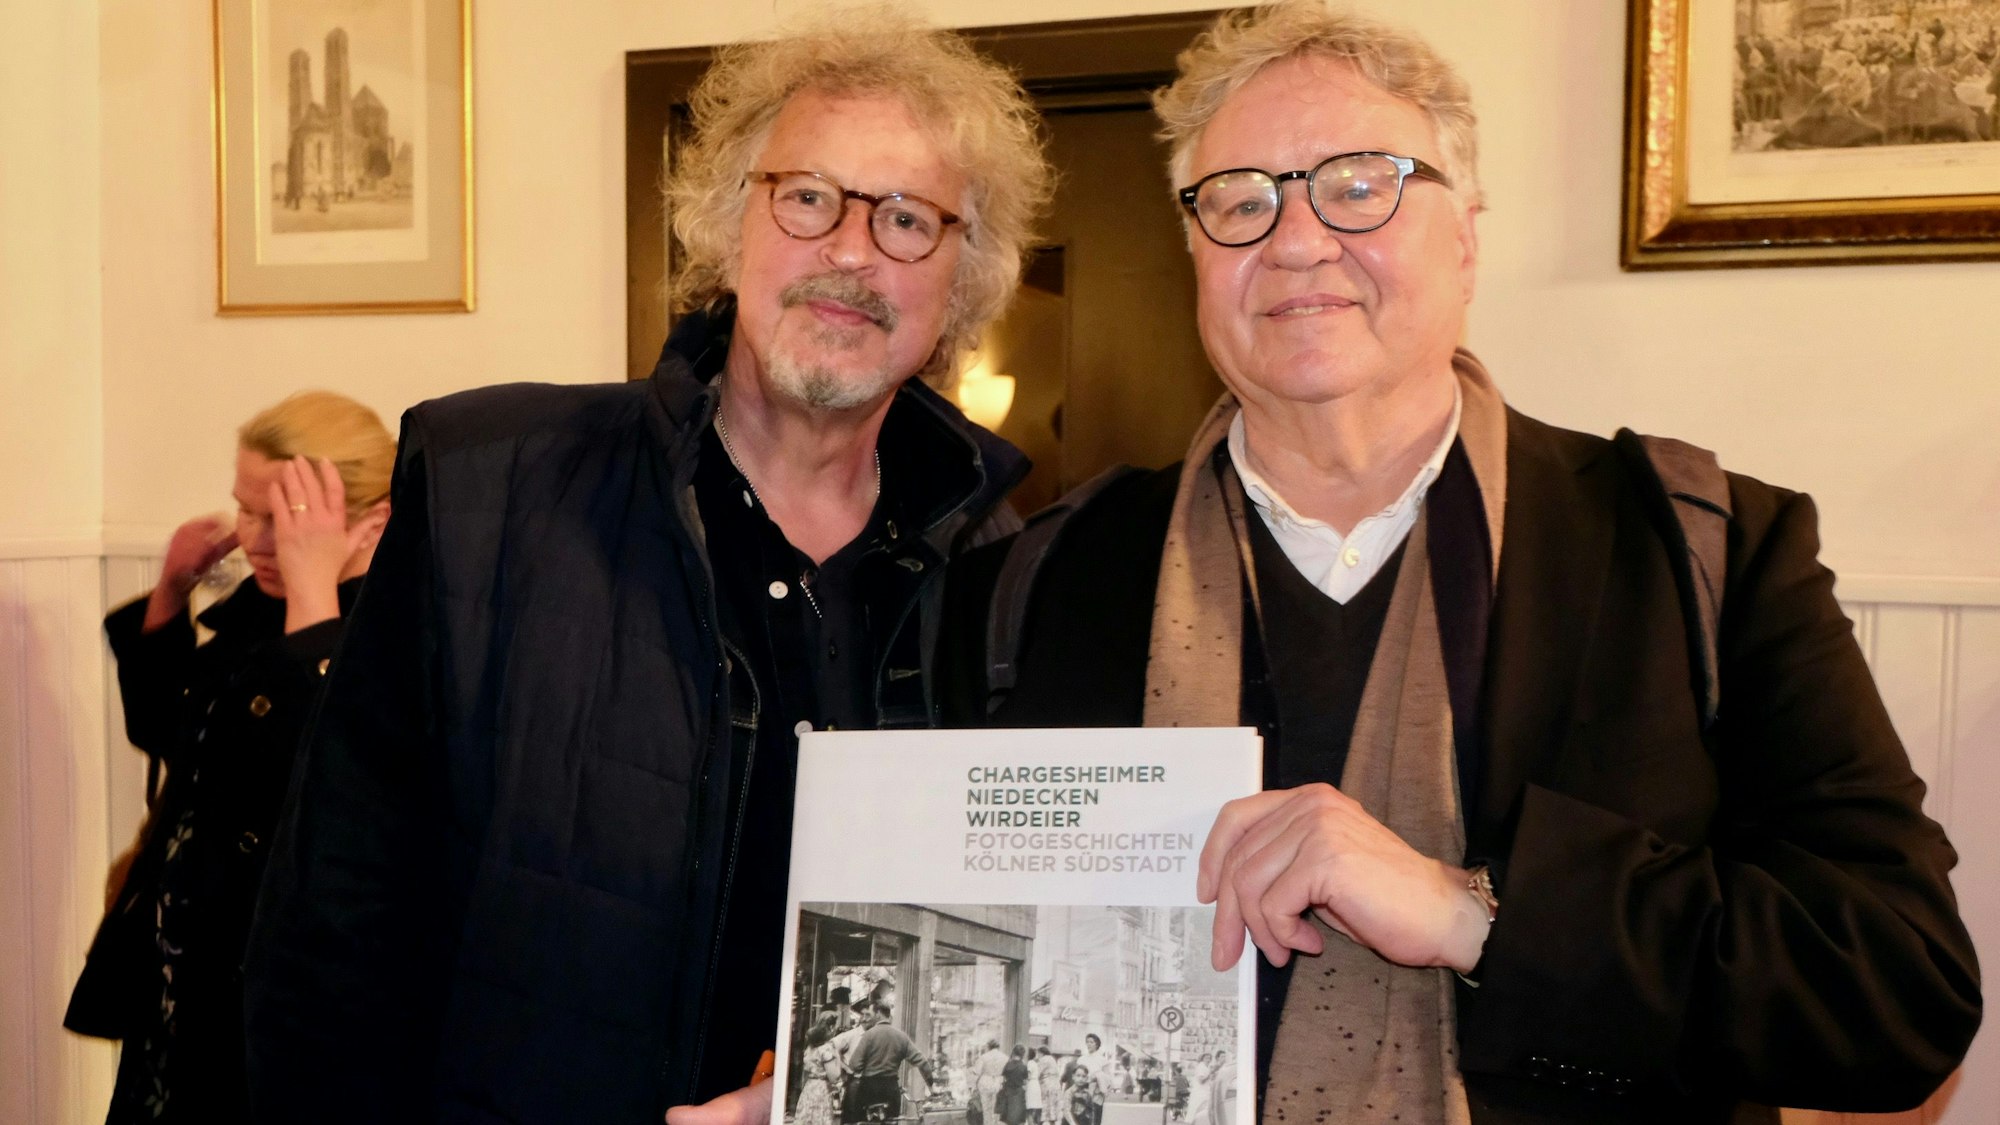 Das Foto zeigt Wolfgang Niedecken und Eusebius Wirdeier mit ihrem neuen Bildband.